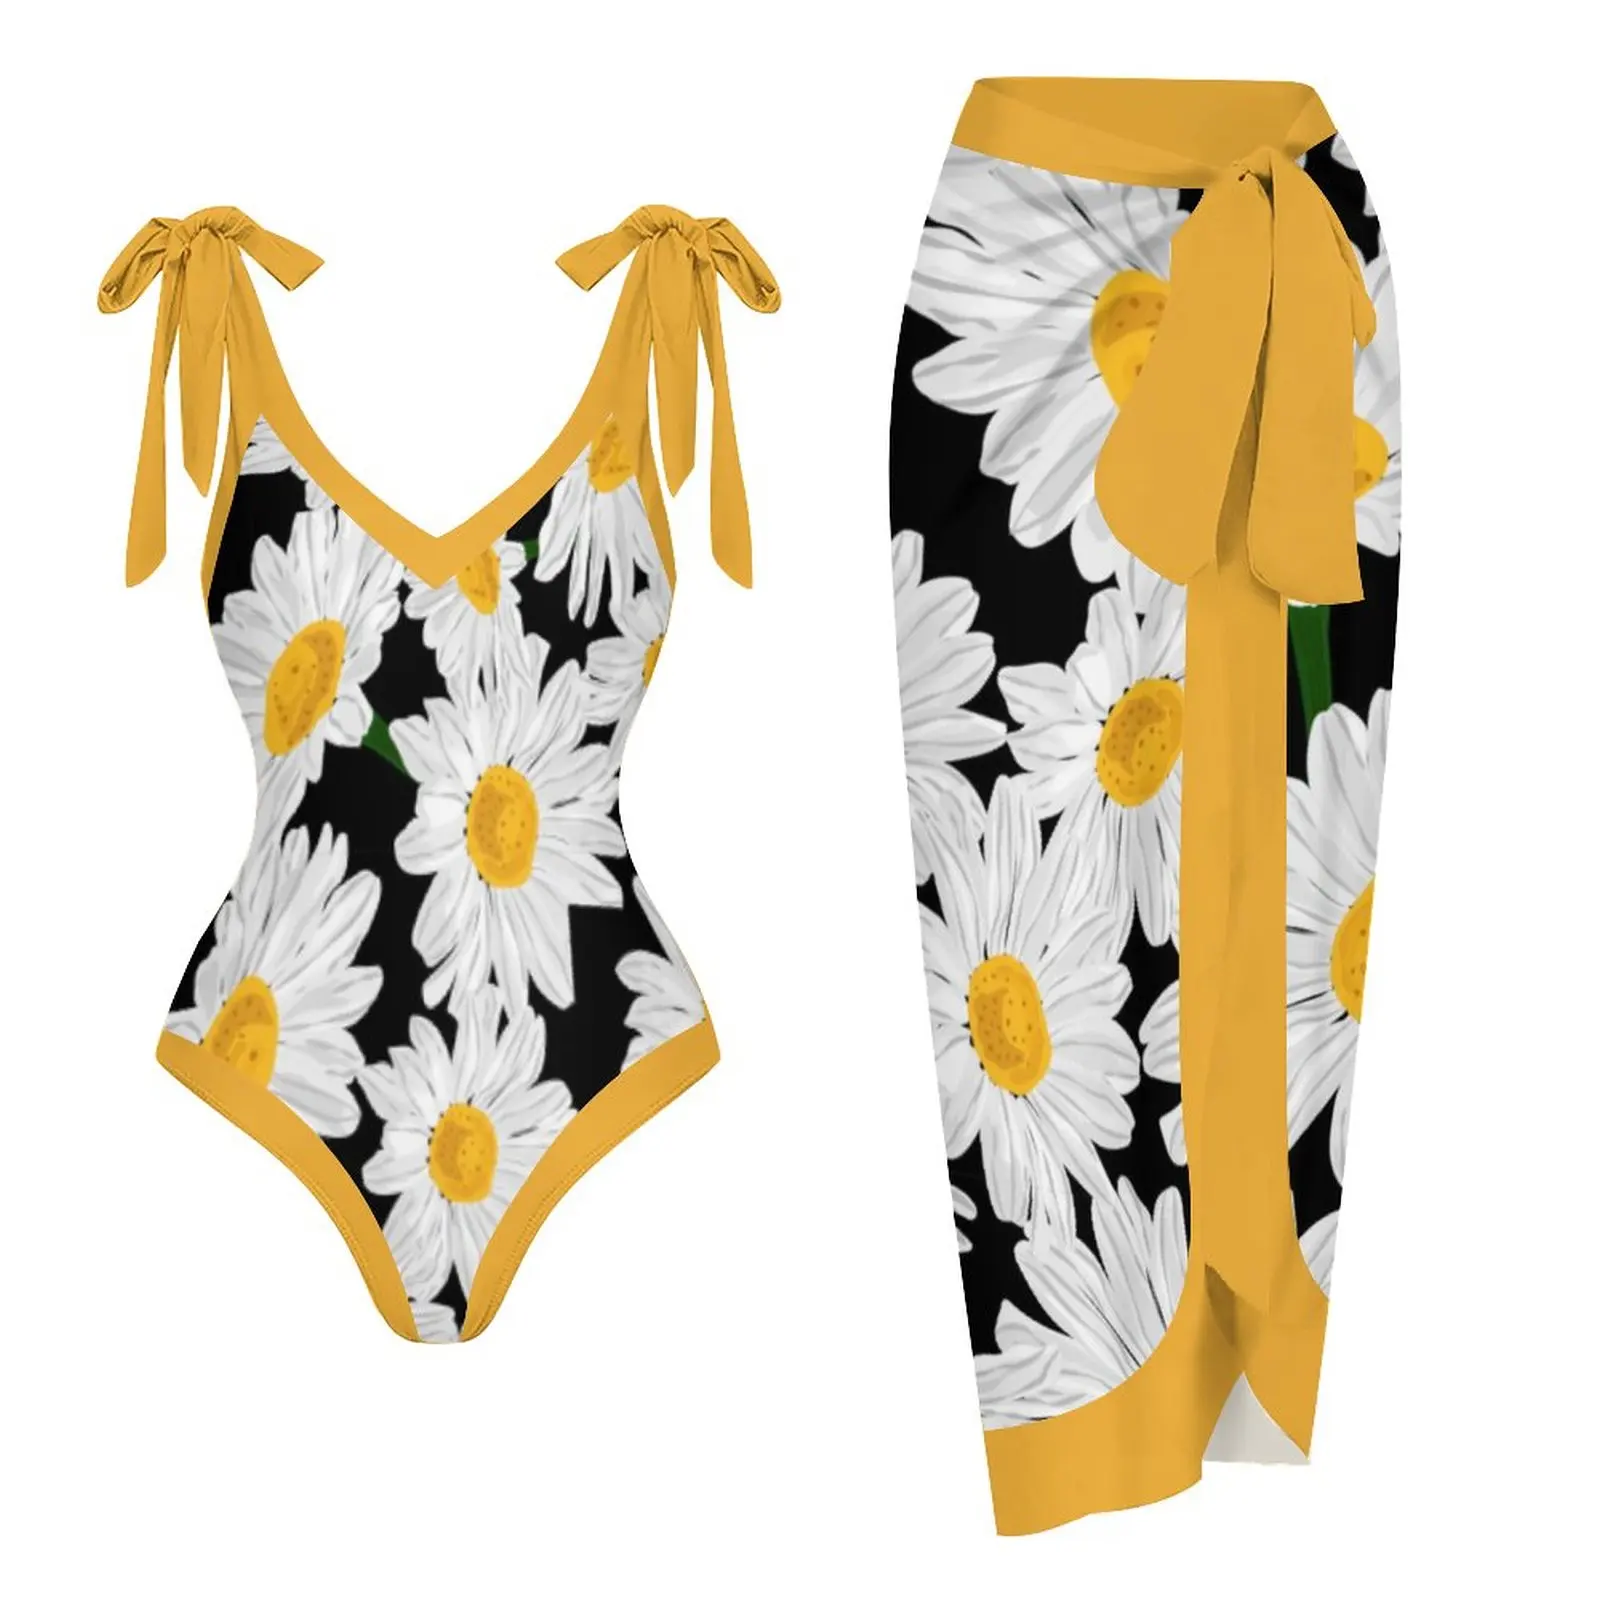 

Новый Желтый Купальник из двух частей с принтом ромашки и открытыми плечами, женский пляжный костюм для отпуска, купальник с юбкой, бикини с высокой талией, пляжная одежда